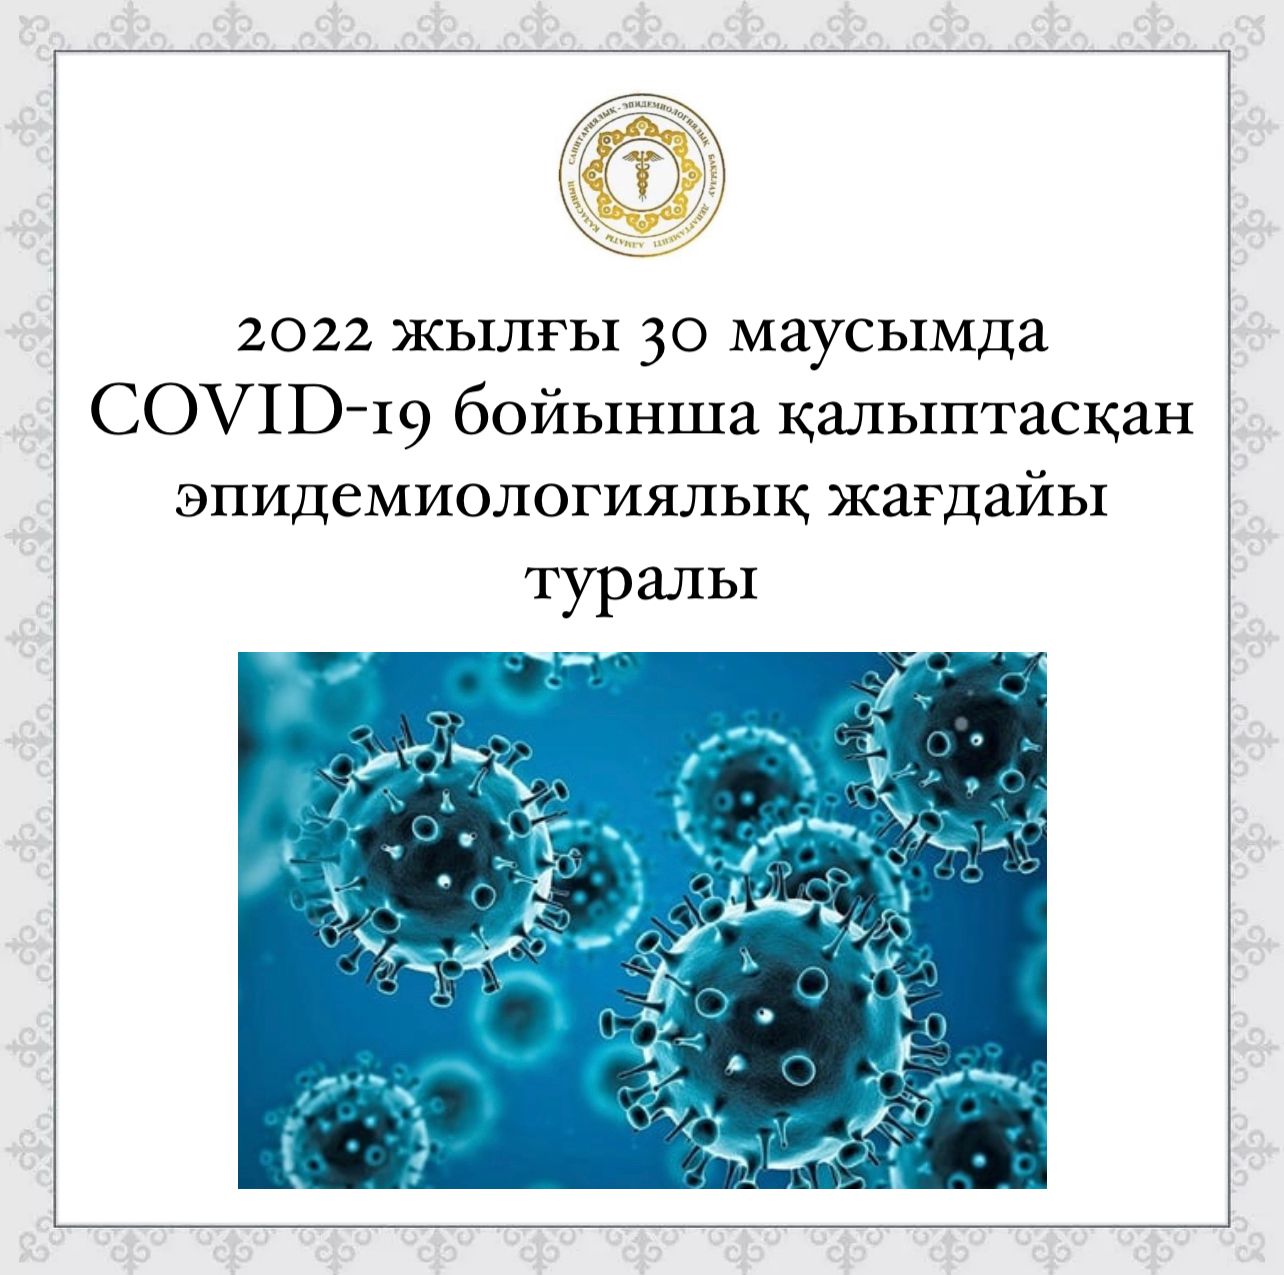 2022 жылғы 30 маусымда COVID-19 бойынша қалыптасқан эпидемиологиялық жағдайы туралы